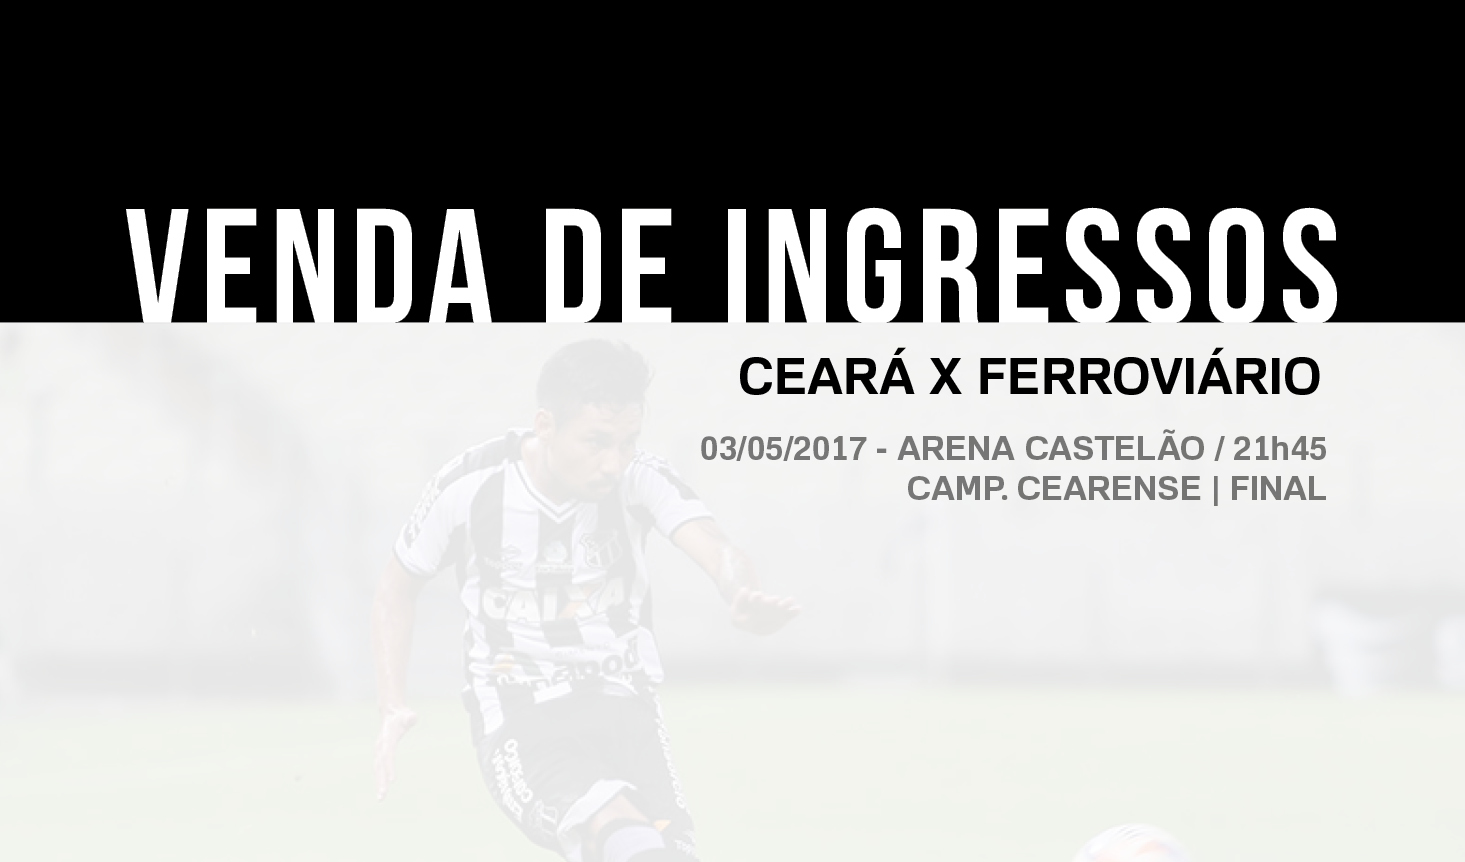 Confira os detalhes da venda de ingressos para Ceará x Ferroviário